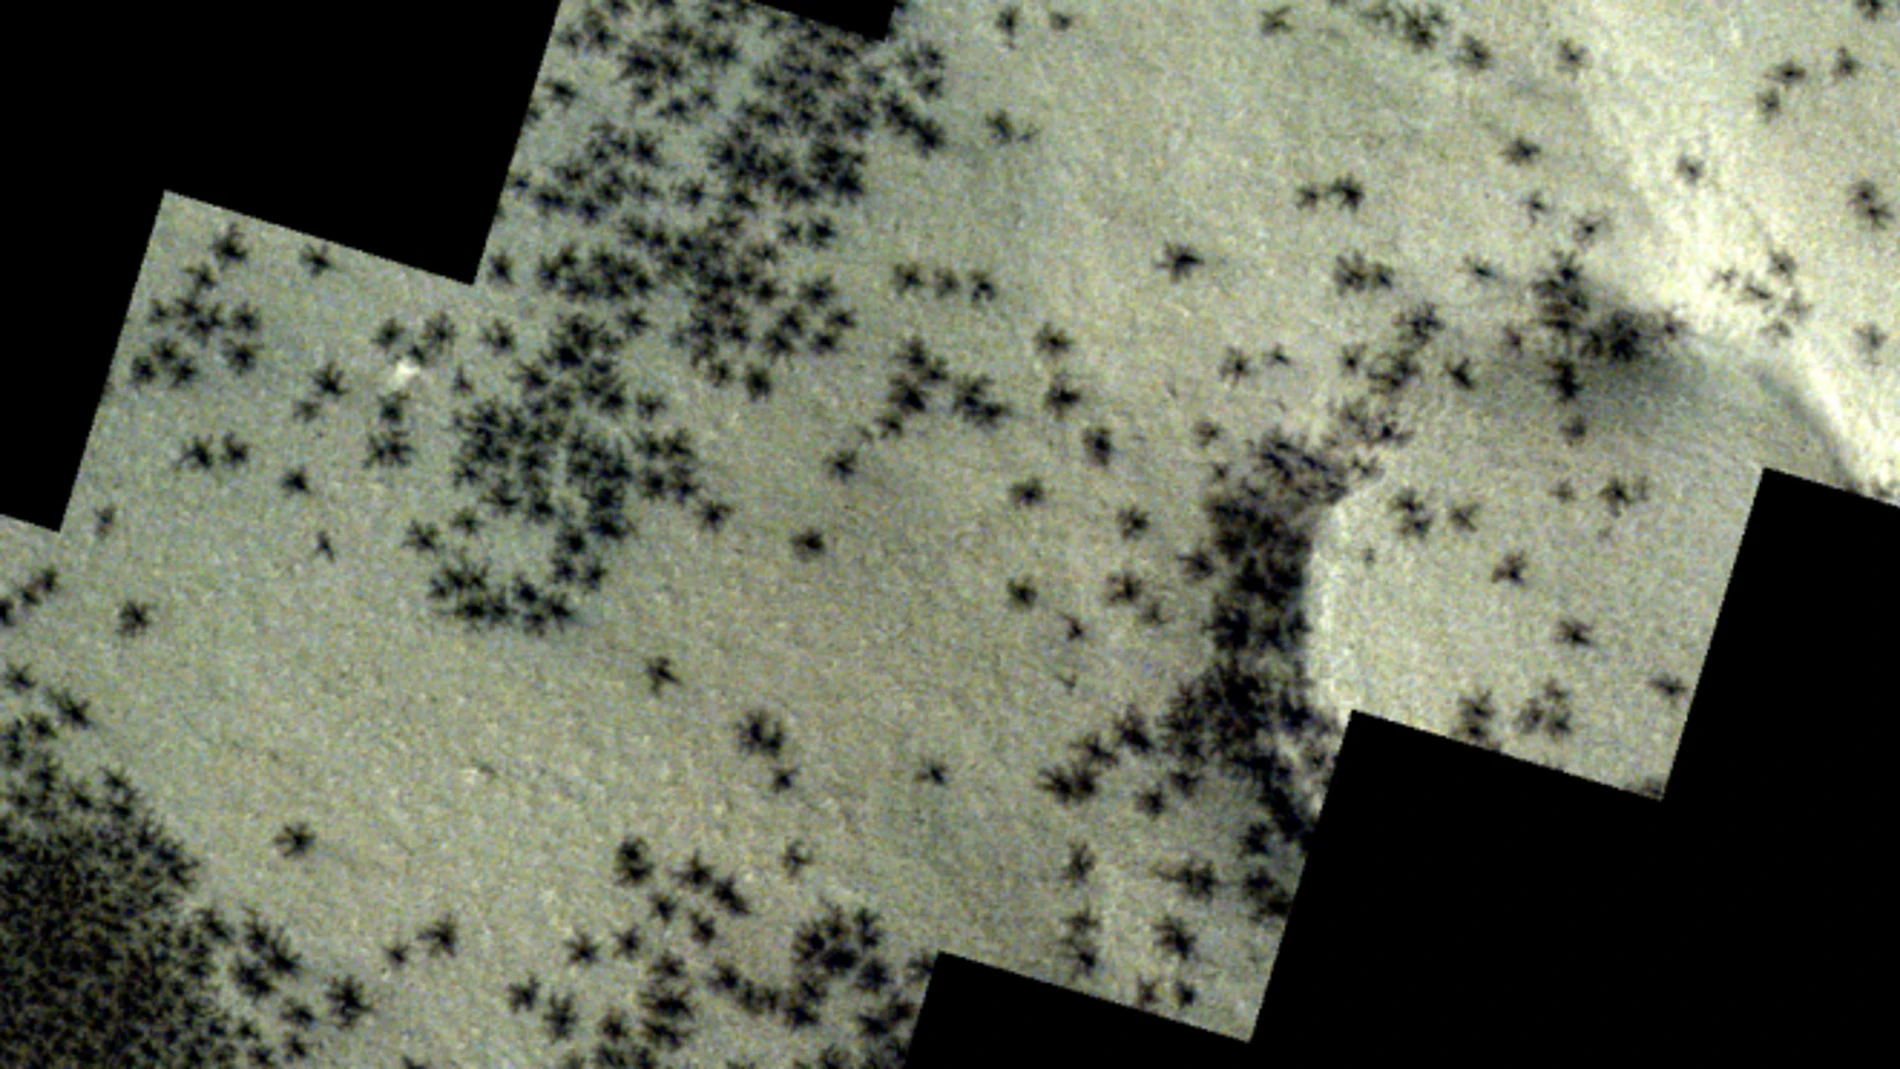 Qué son las 'arañas' que la Agencia Espacial Europea ha fotografiado en Marte.